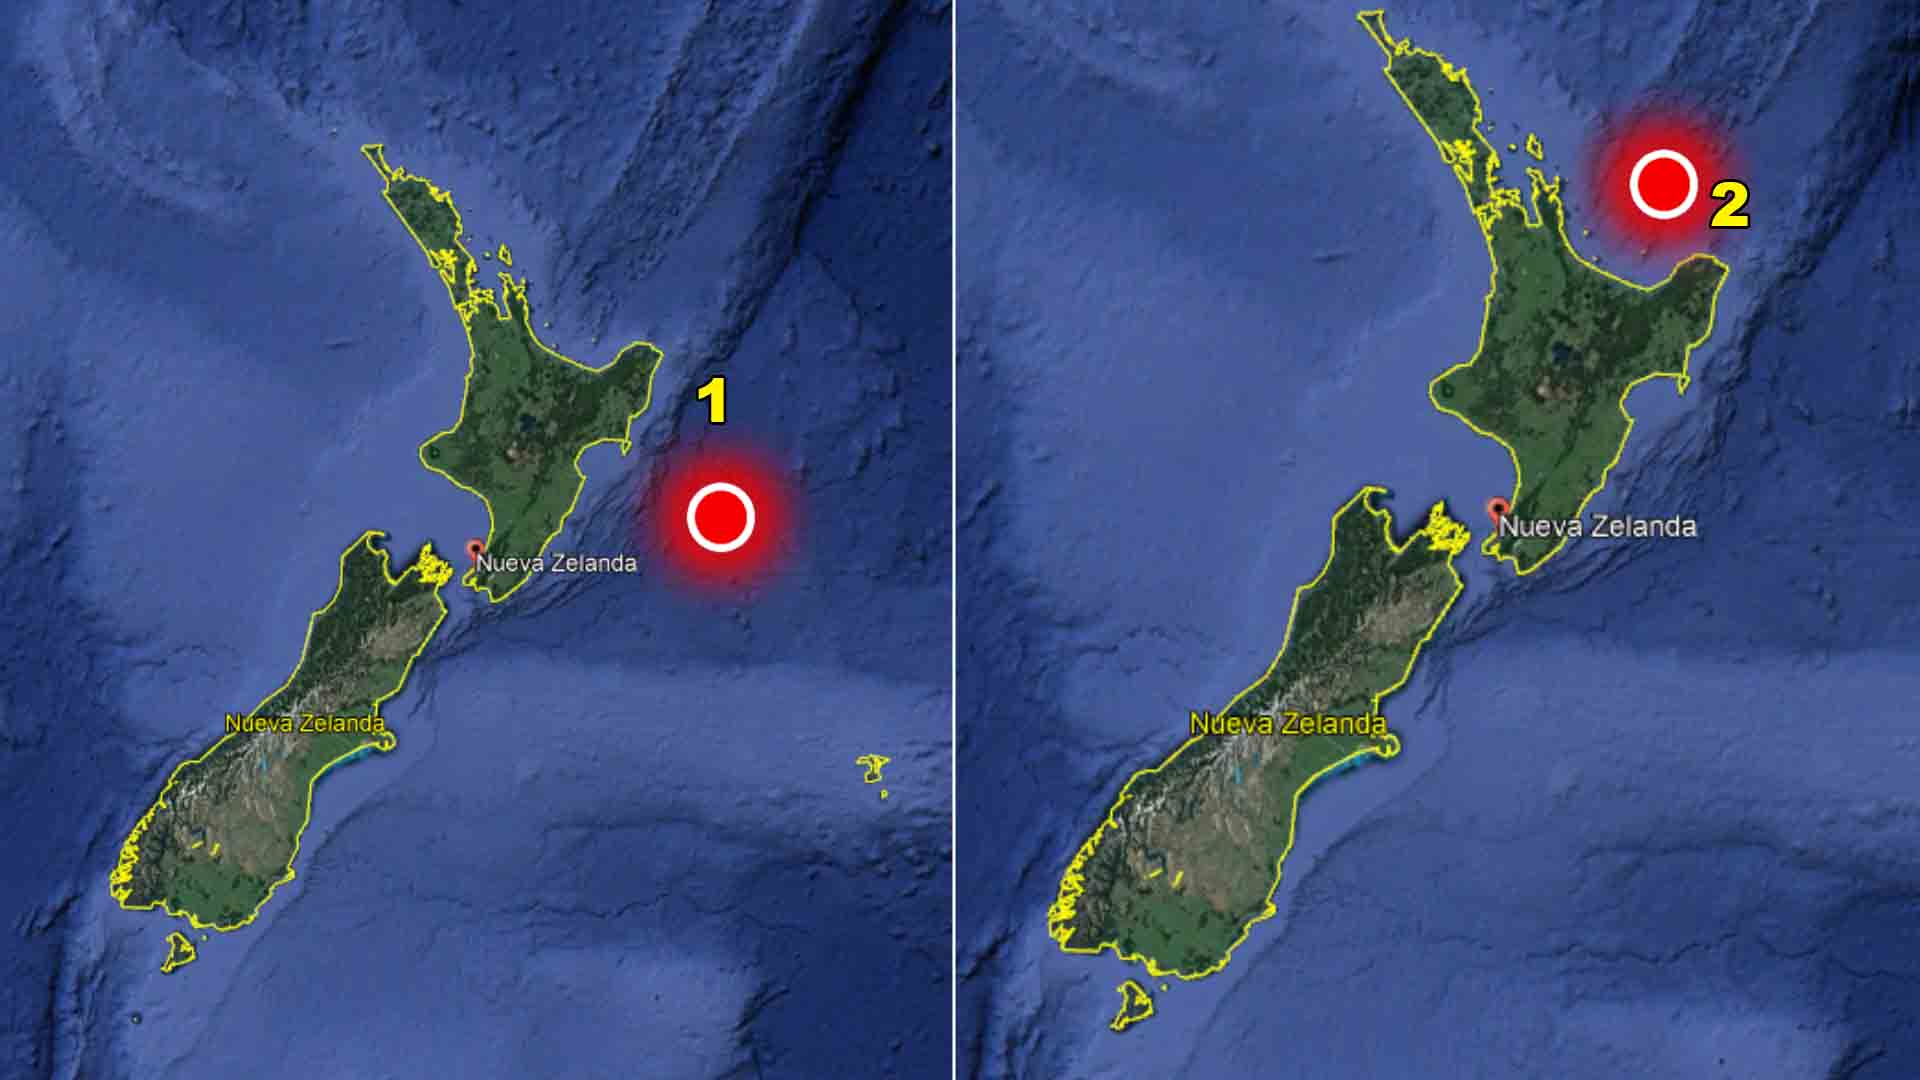 2 fuertes terremotos sacuden a Nueva Zelanda en un lapso de 3 horas.